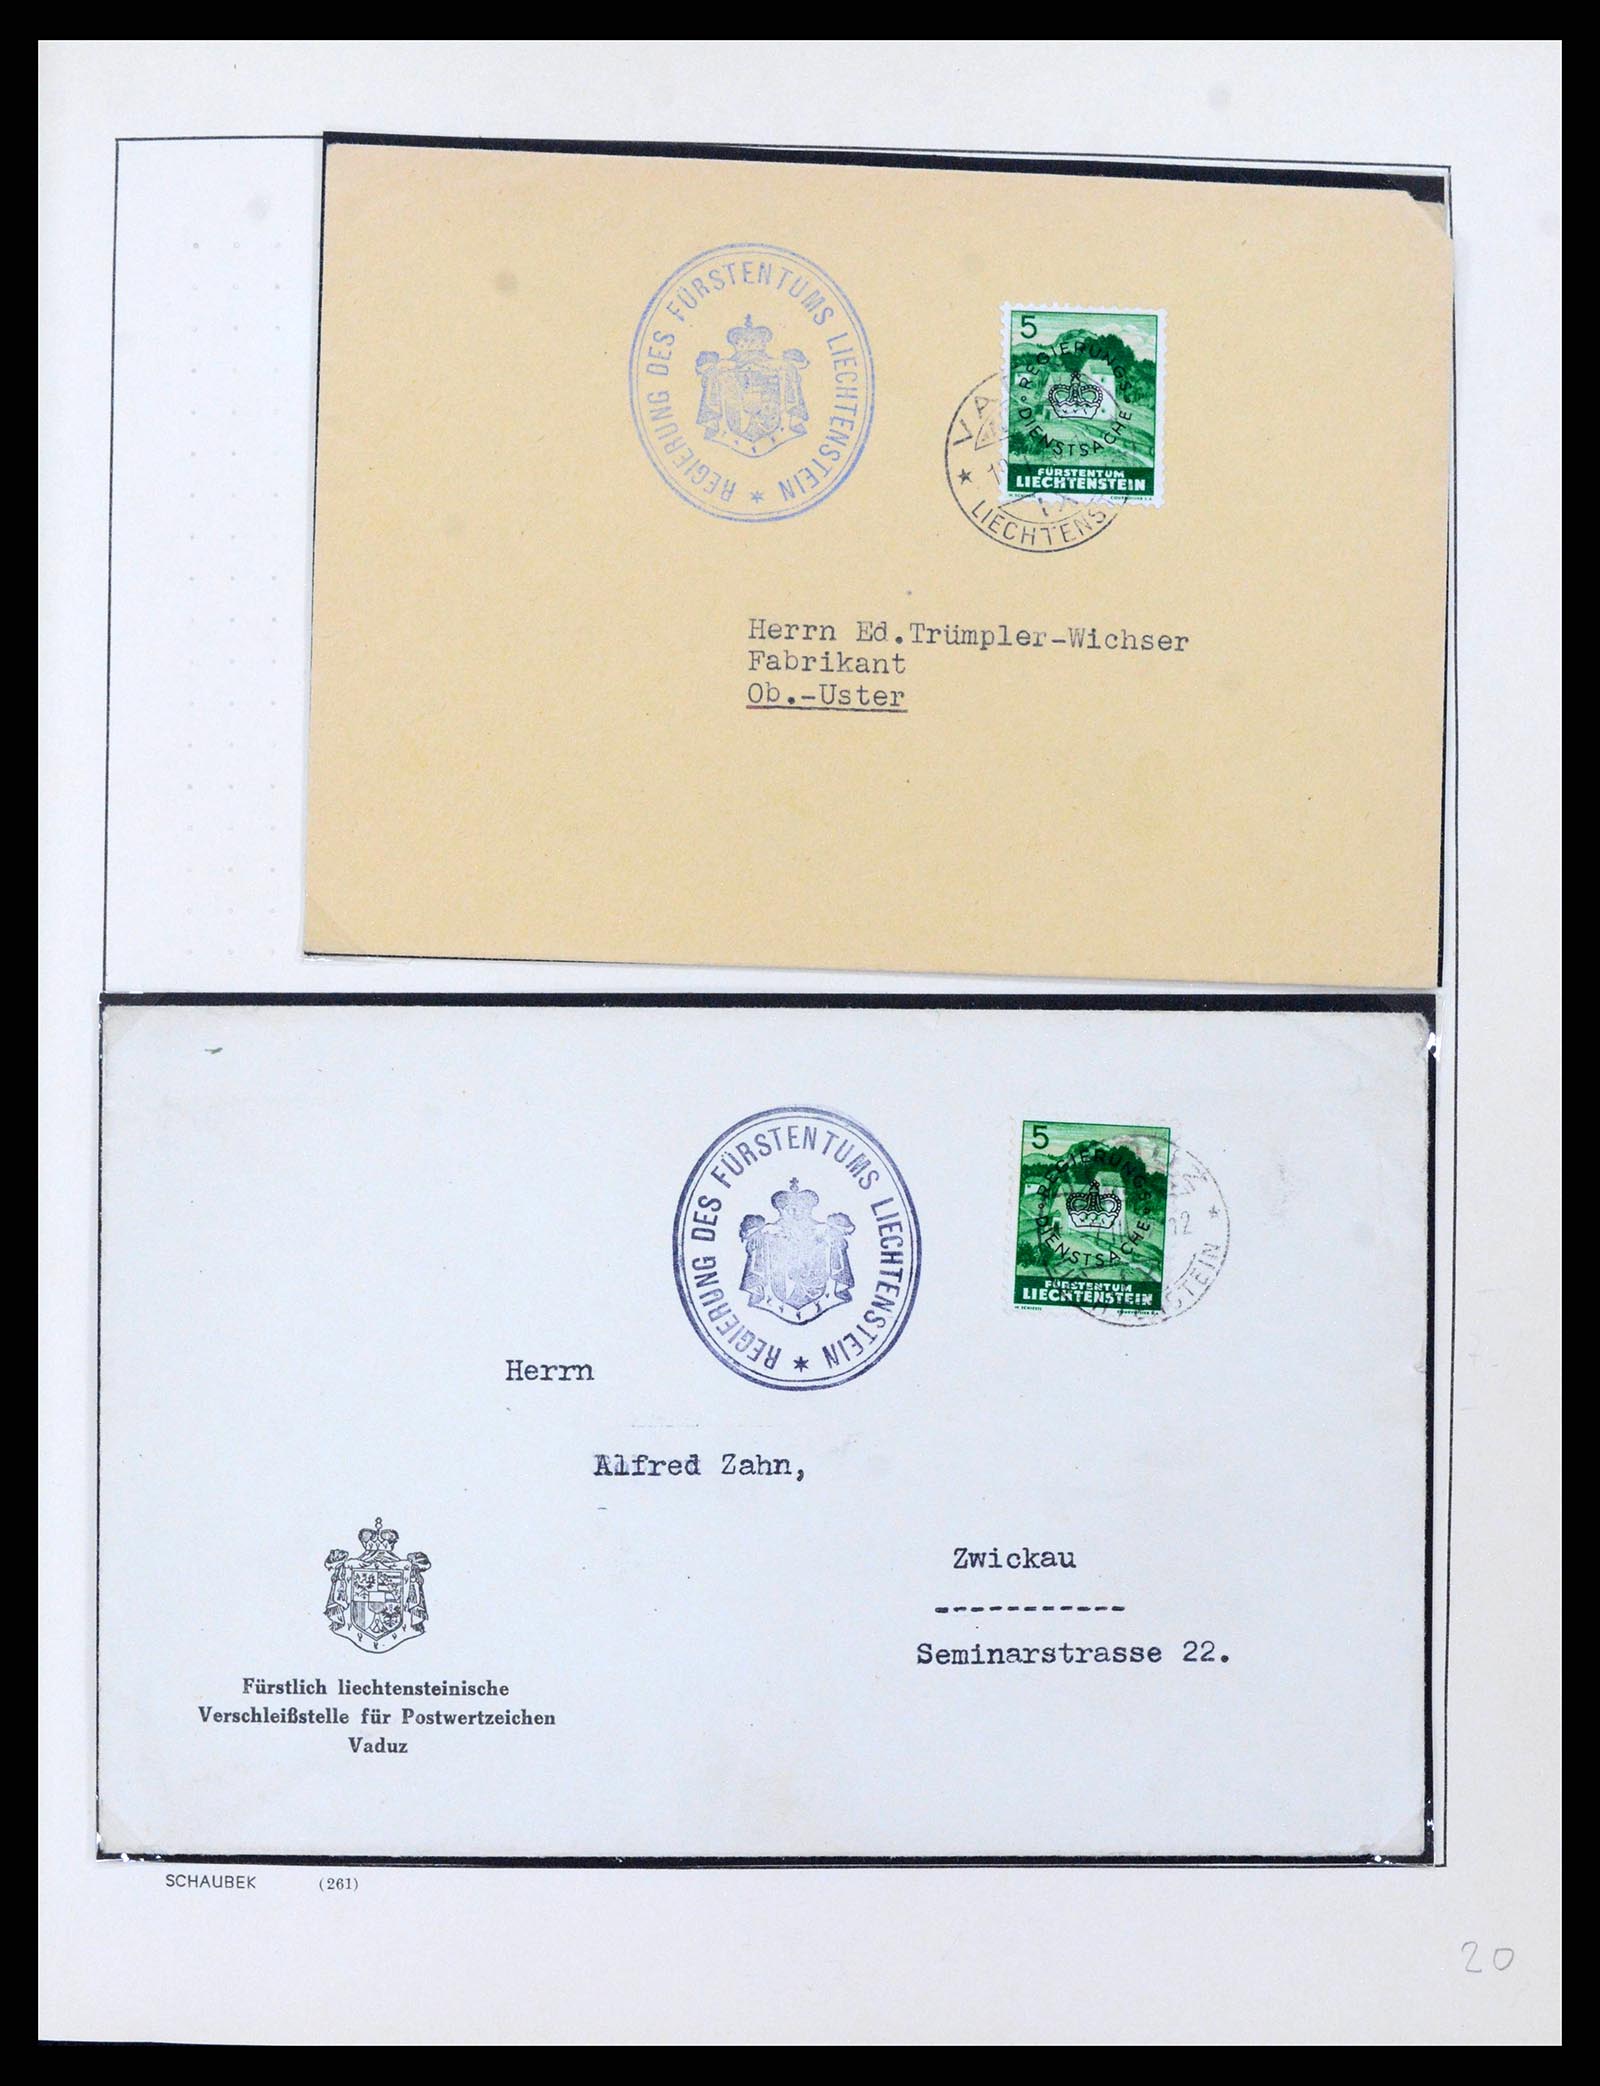 38204 0017 - Stamp collection 38204 Liechtenstein service covers 1932-1989.